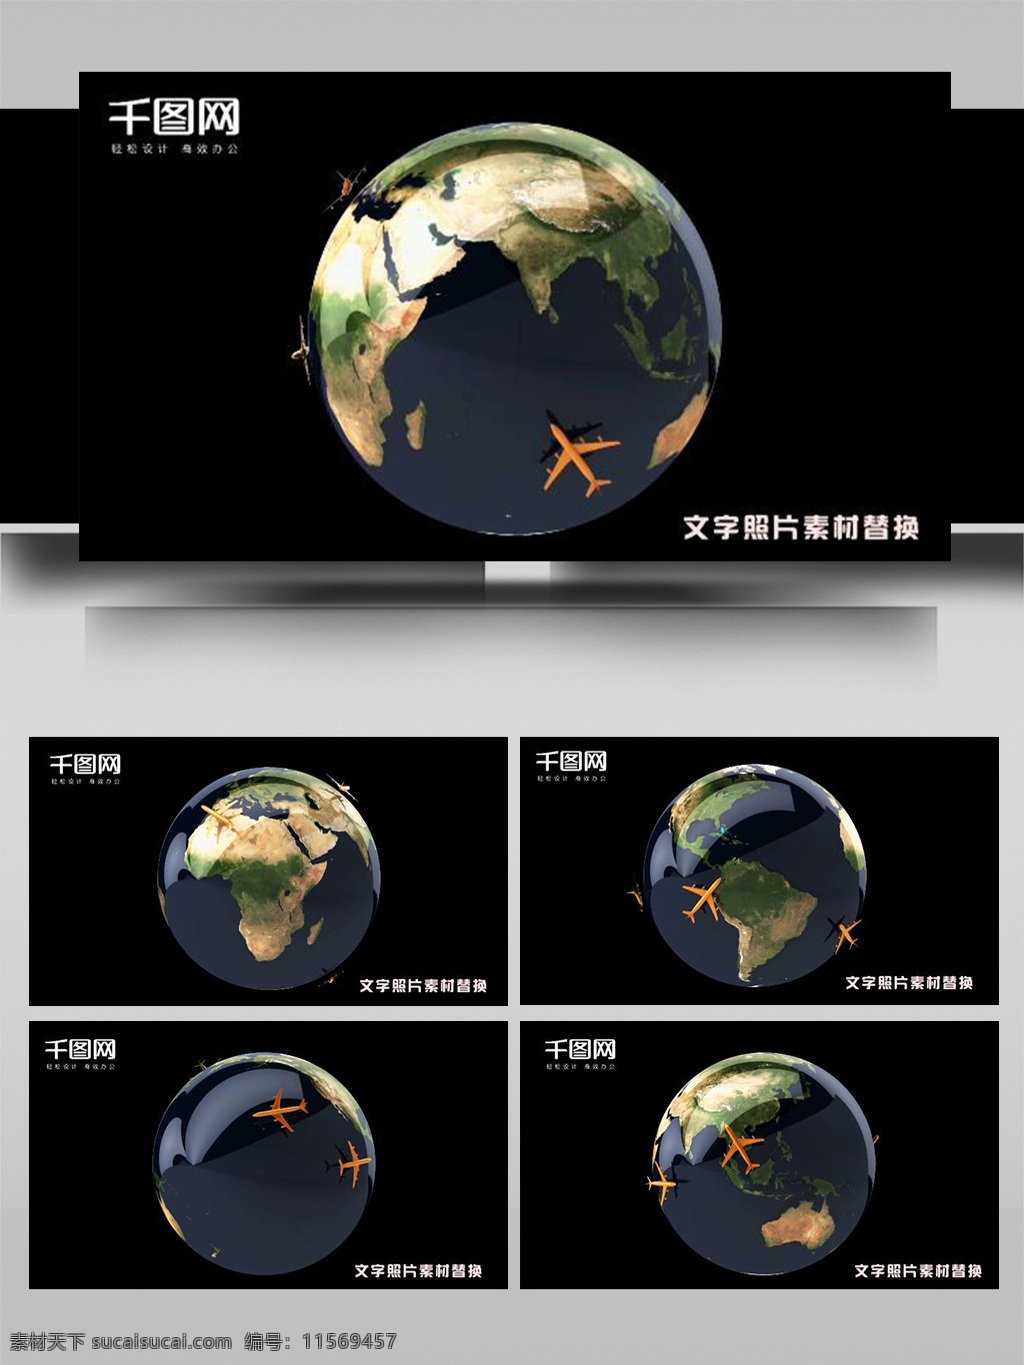 星球 飞机 飞行 线路 动态 ae 模板 数字 科技 大气 数据 显示 地球 元素 史诗 电影 函数 科幻 黑色 高端 闪亮 背景 片头 未来